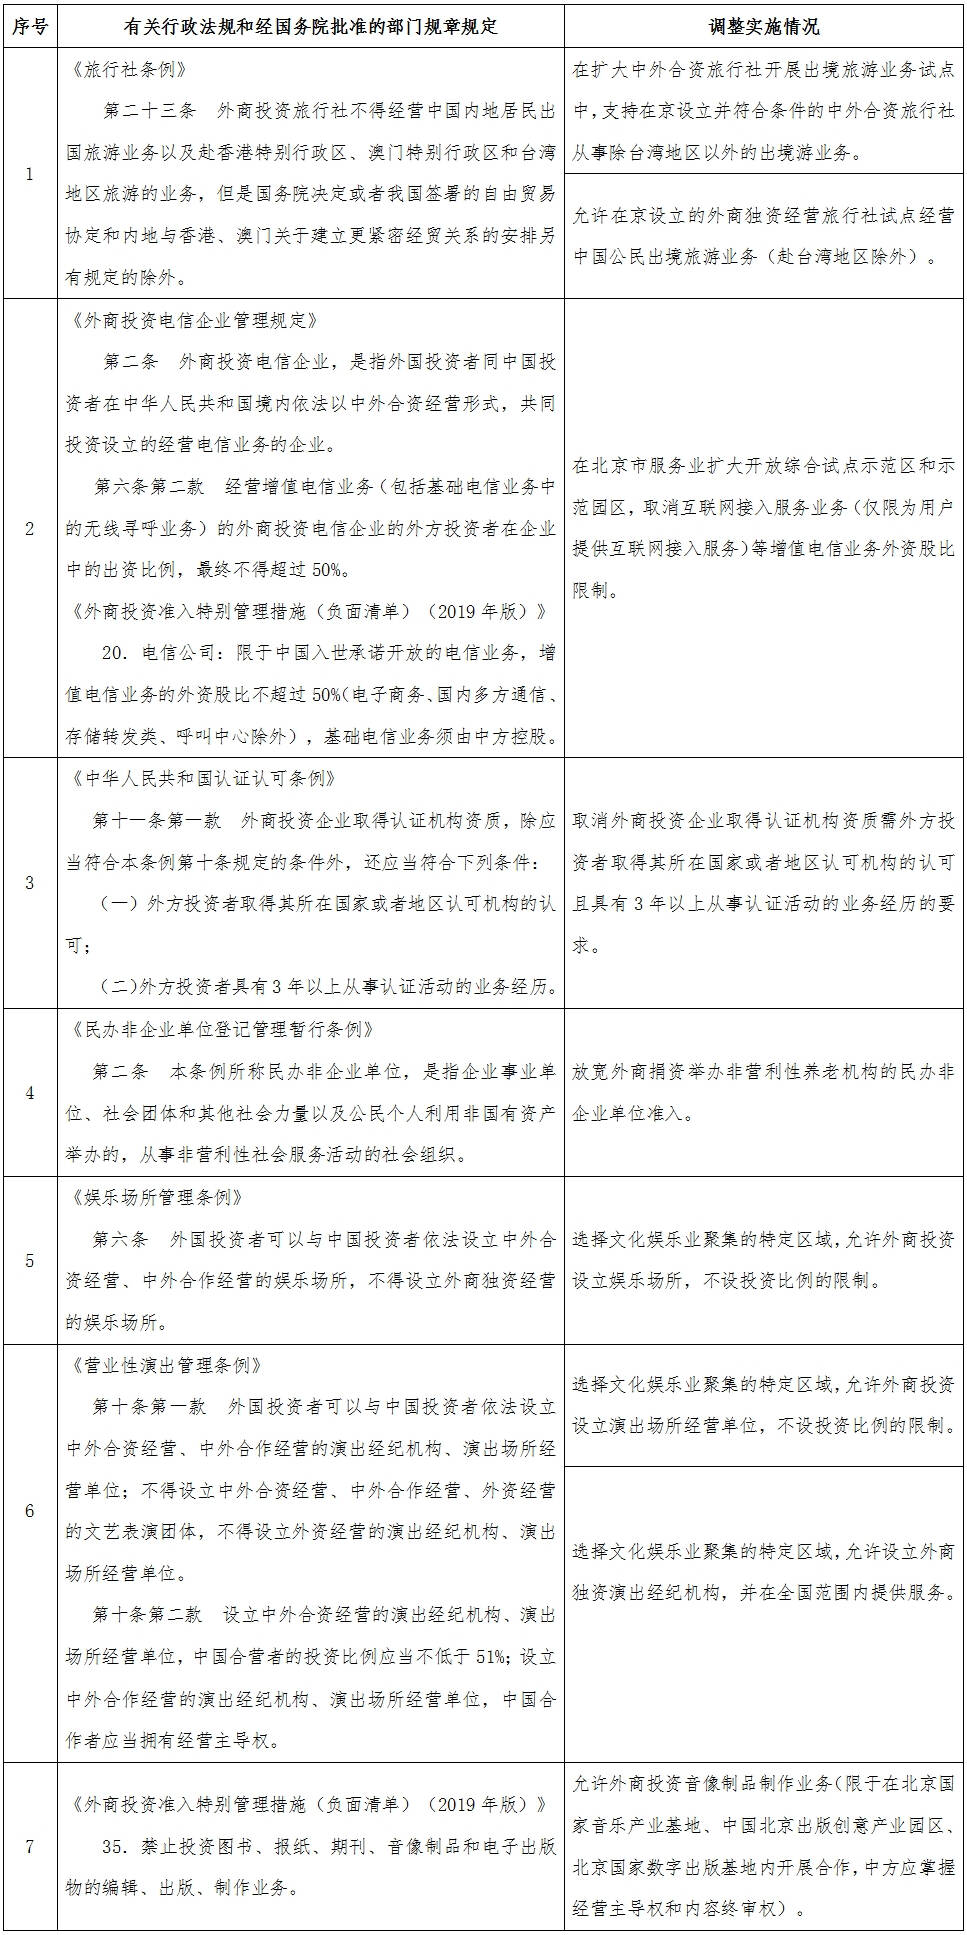 国务院决定在北京市暂时调整实施的有关行政法规和经国务院批准的部门规章规定目录